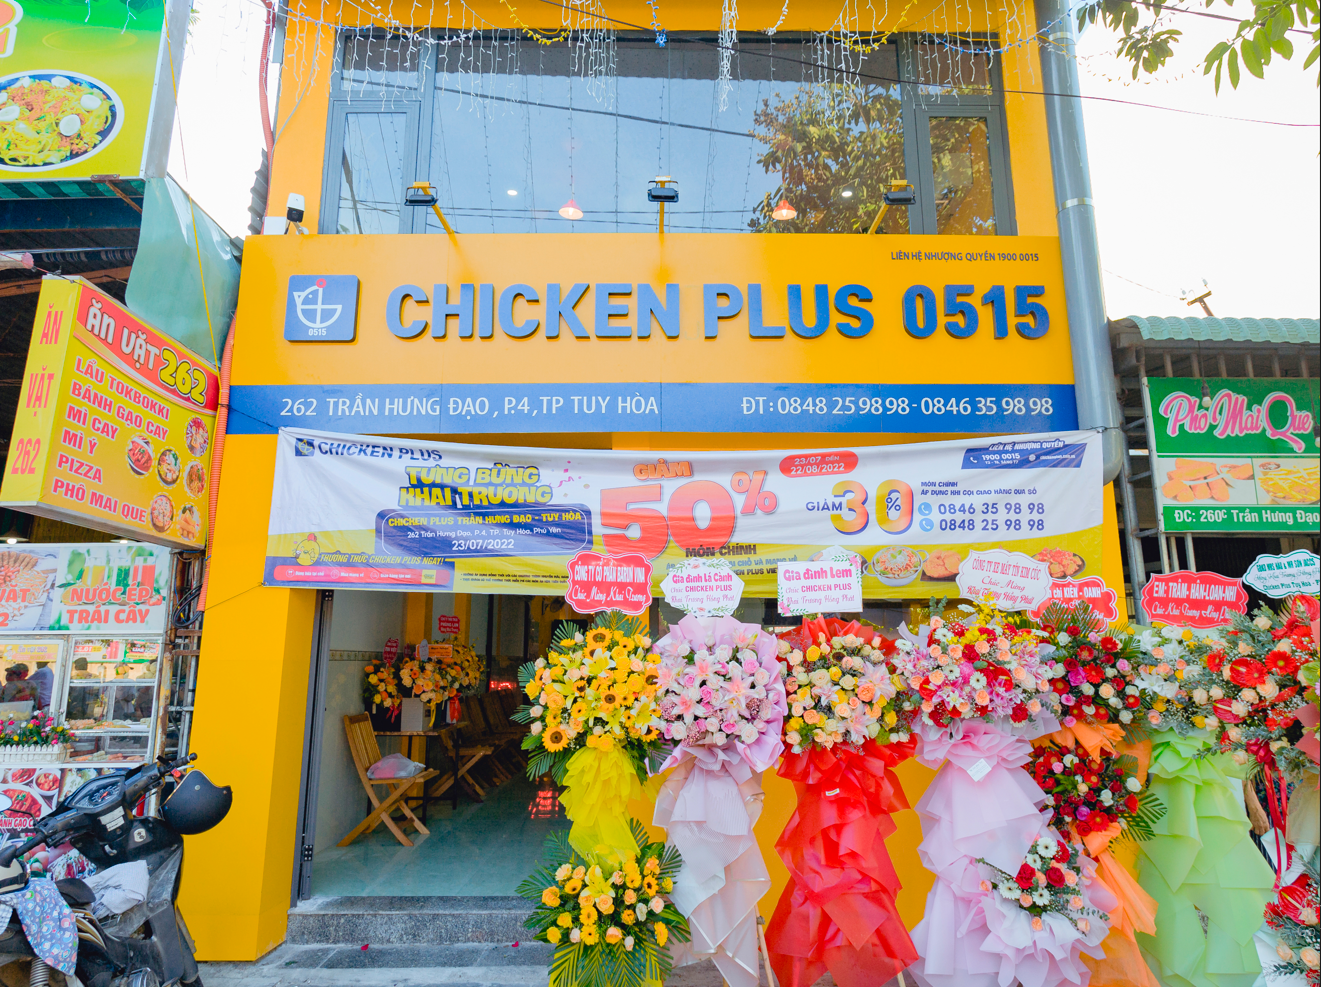 Chicken Plus Trần Hưng Đạo (Phú Yên)